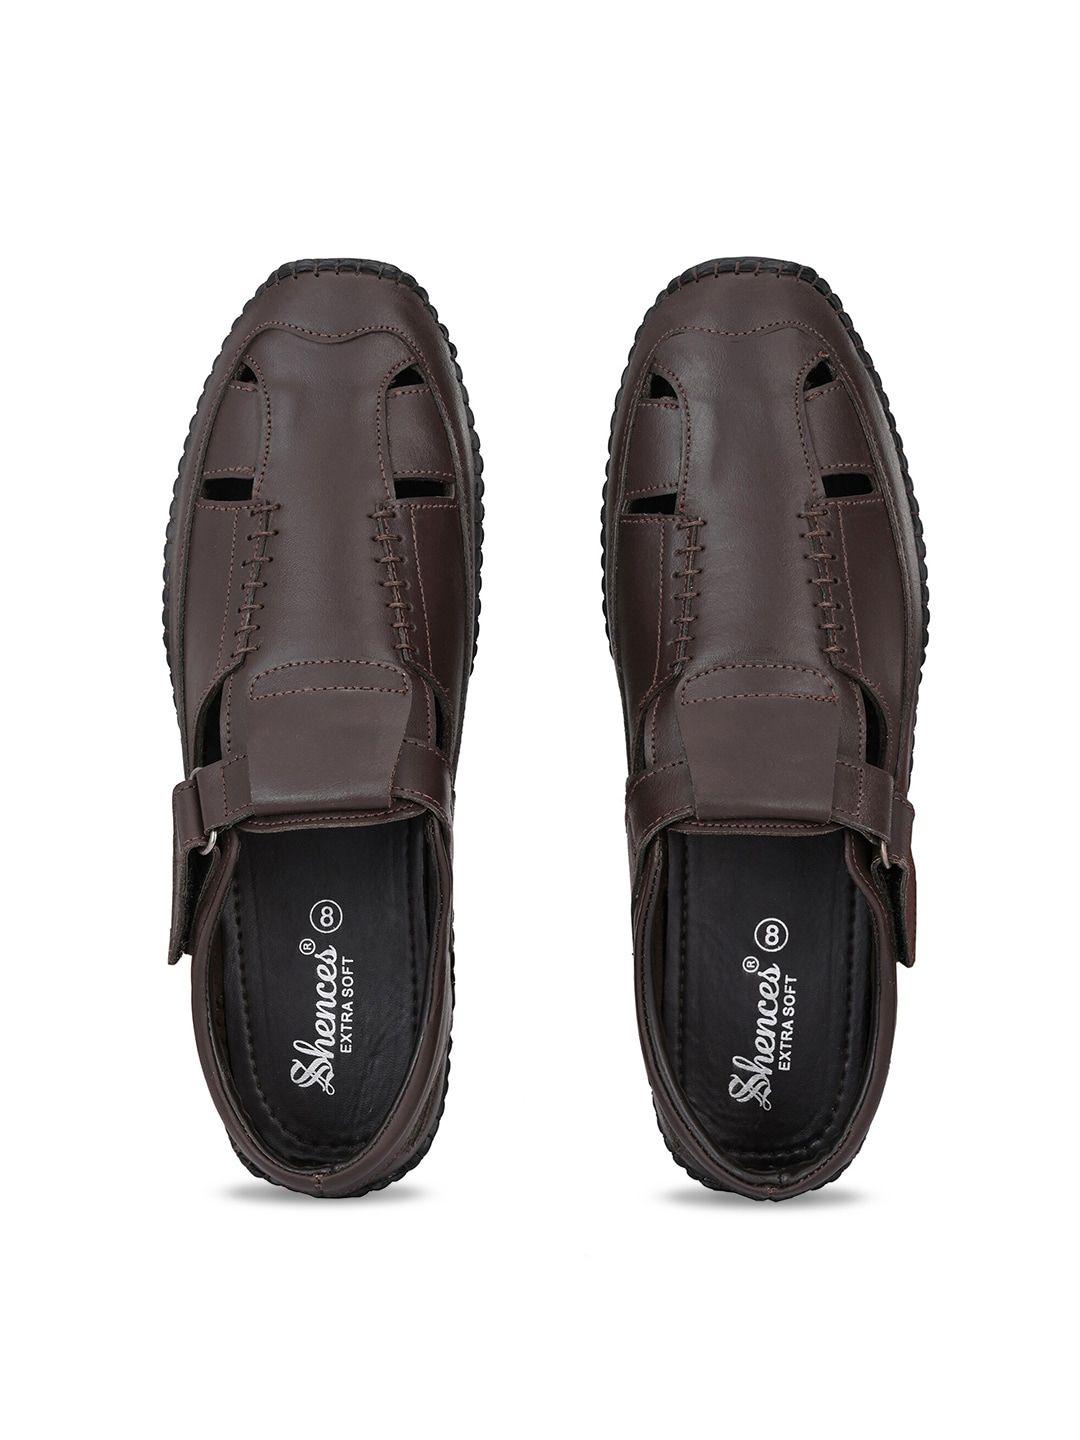 shences men leather shoe-style sandals